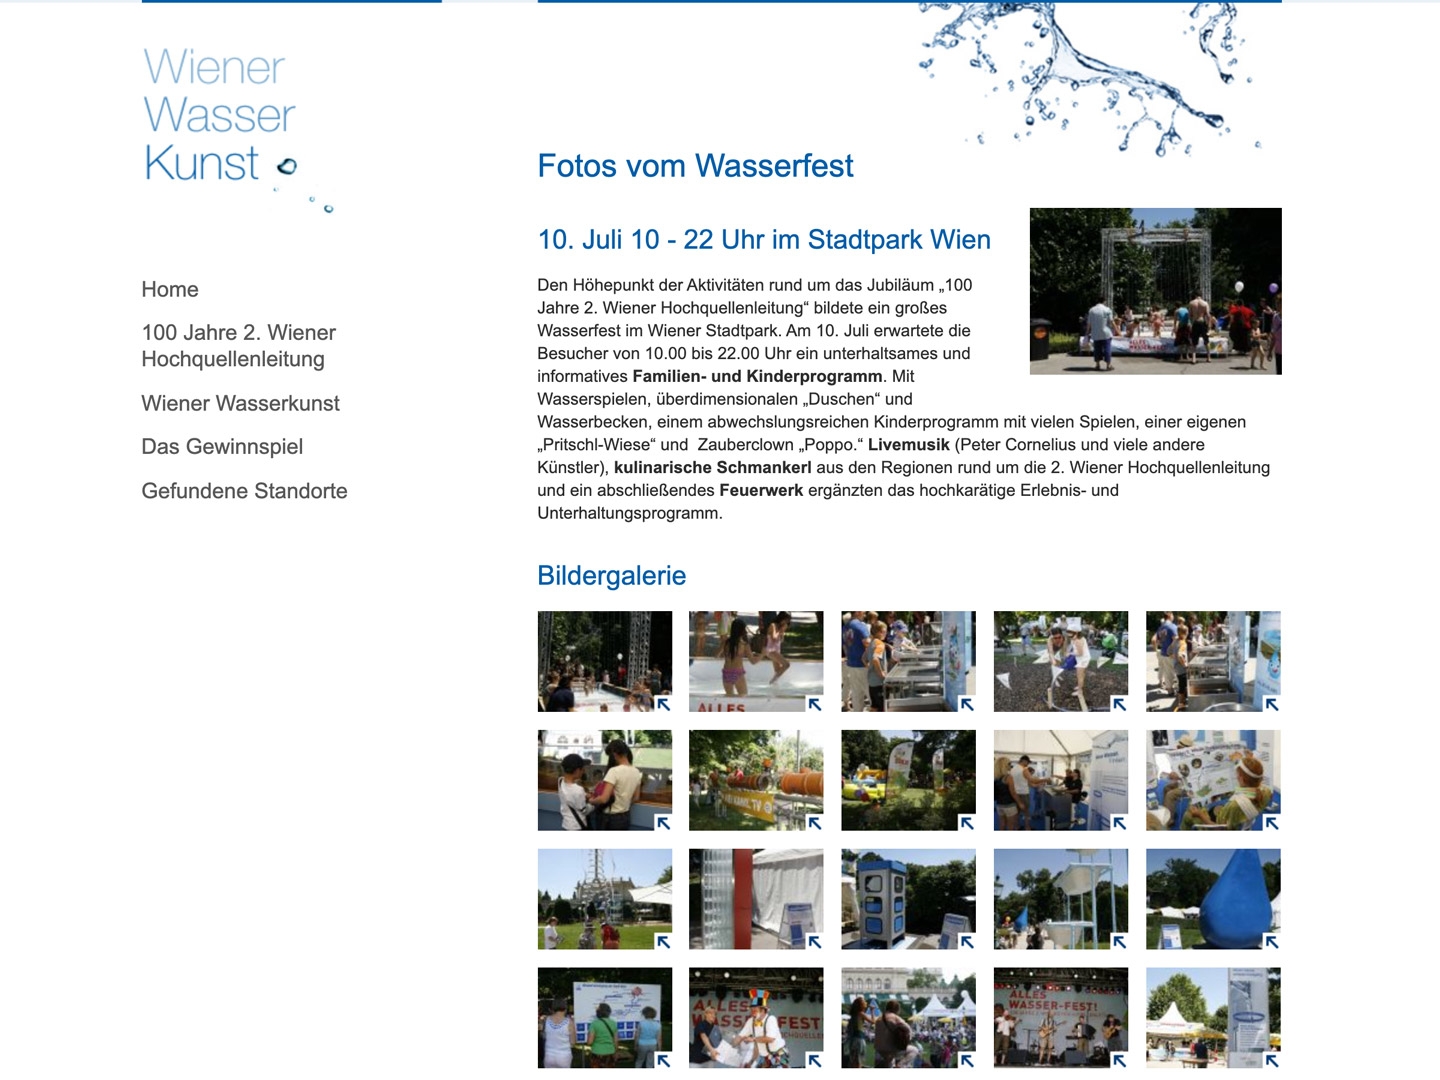 Wiener Wasserkunst | wienerwasserkunst.at | 2010 (Screen Only 07) © echonet communication & Auftraggeber / Fotografen